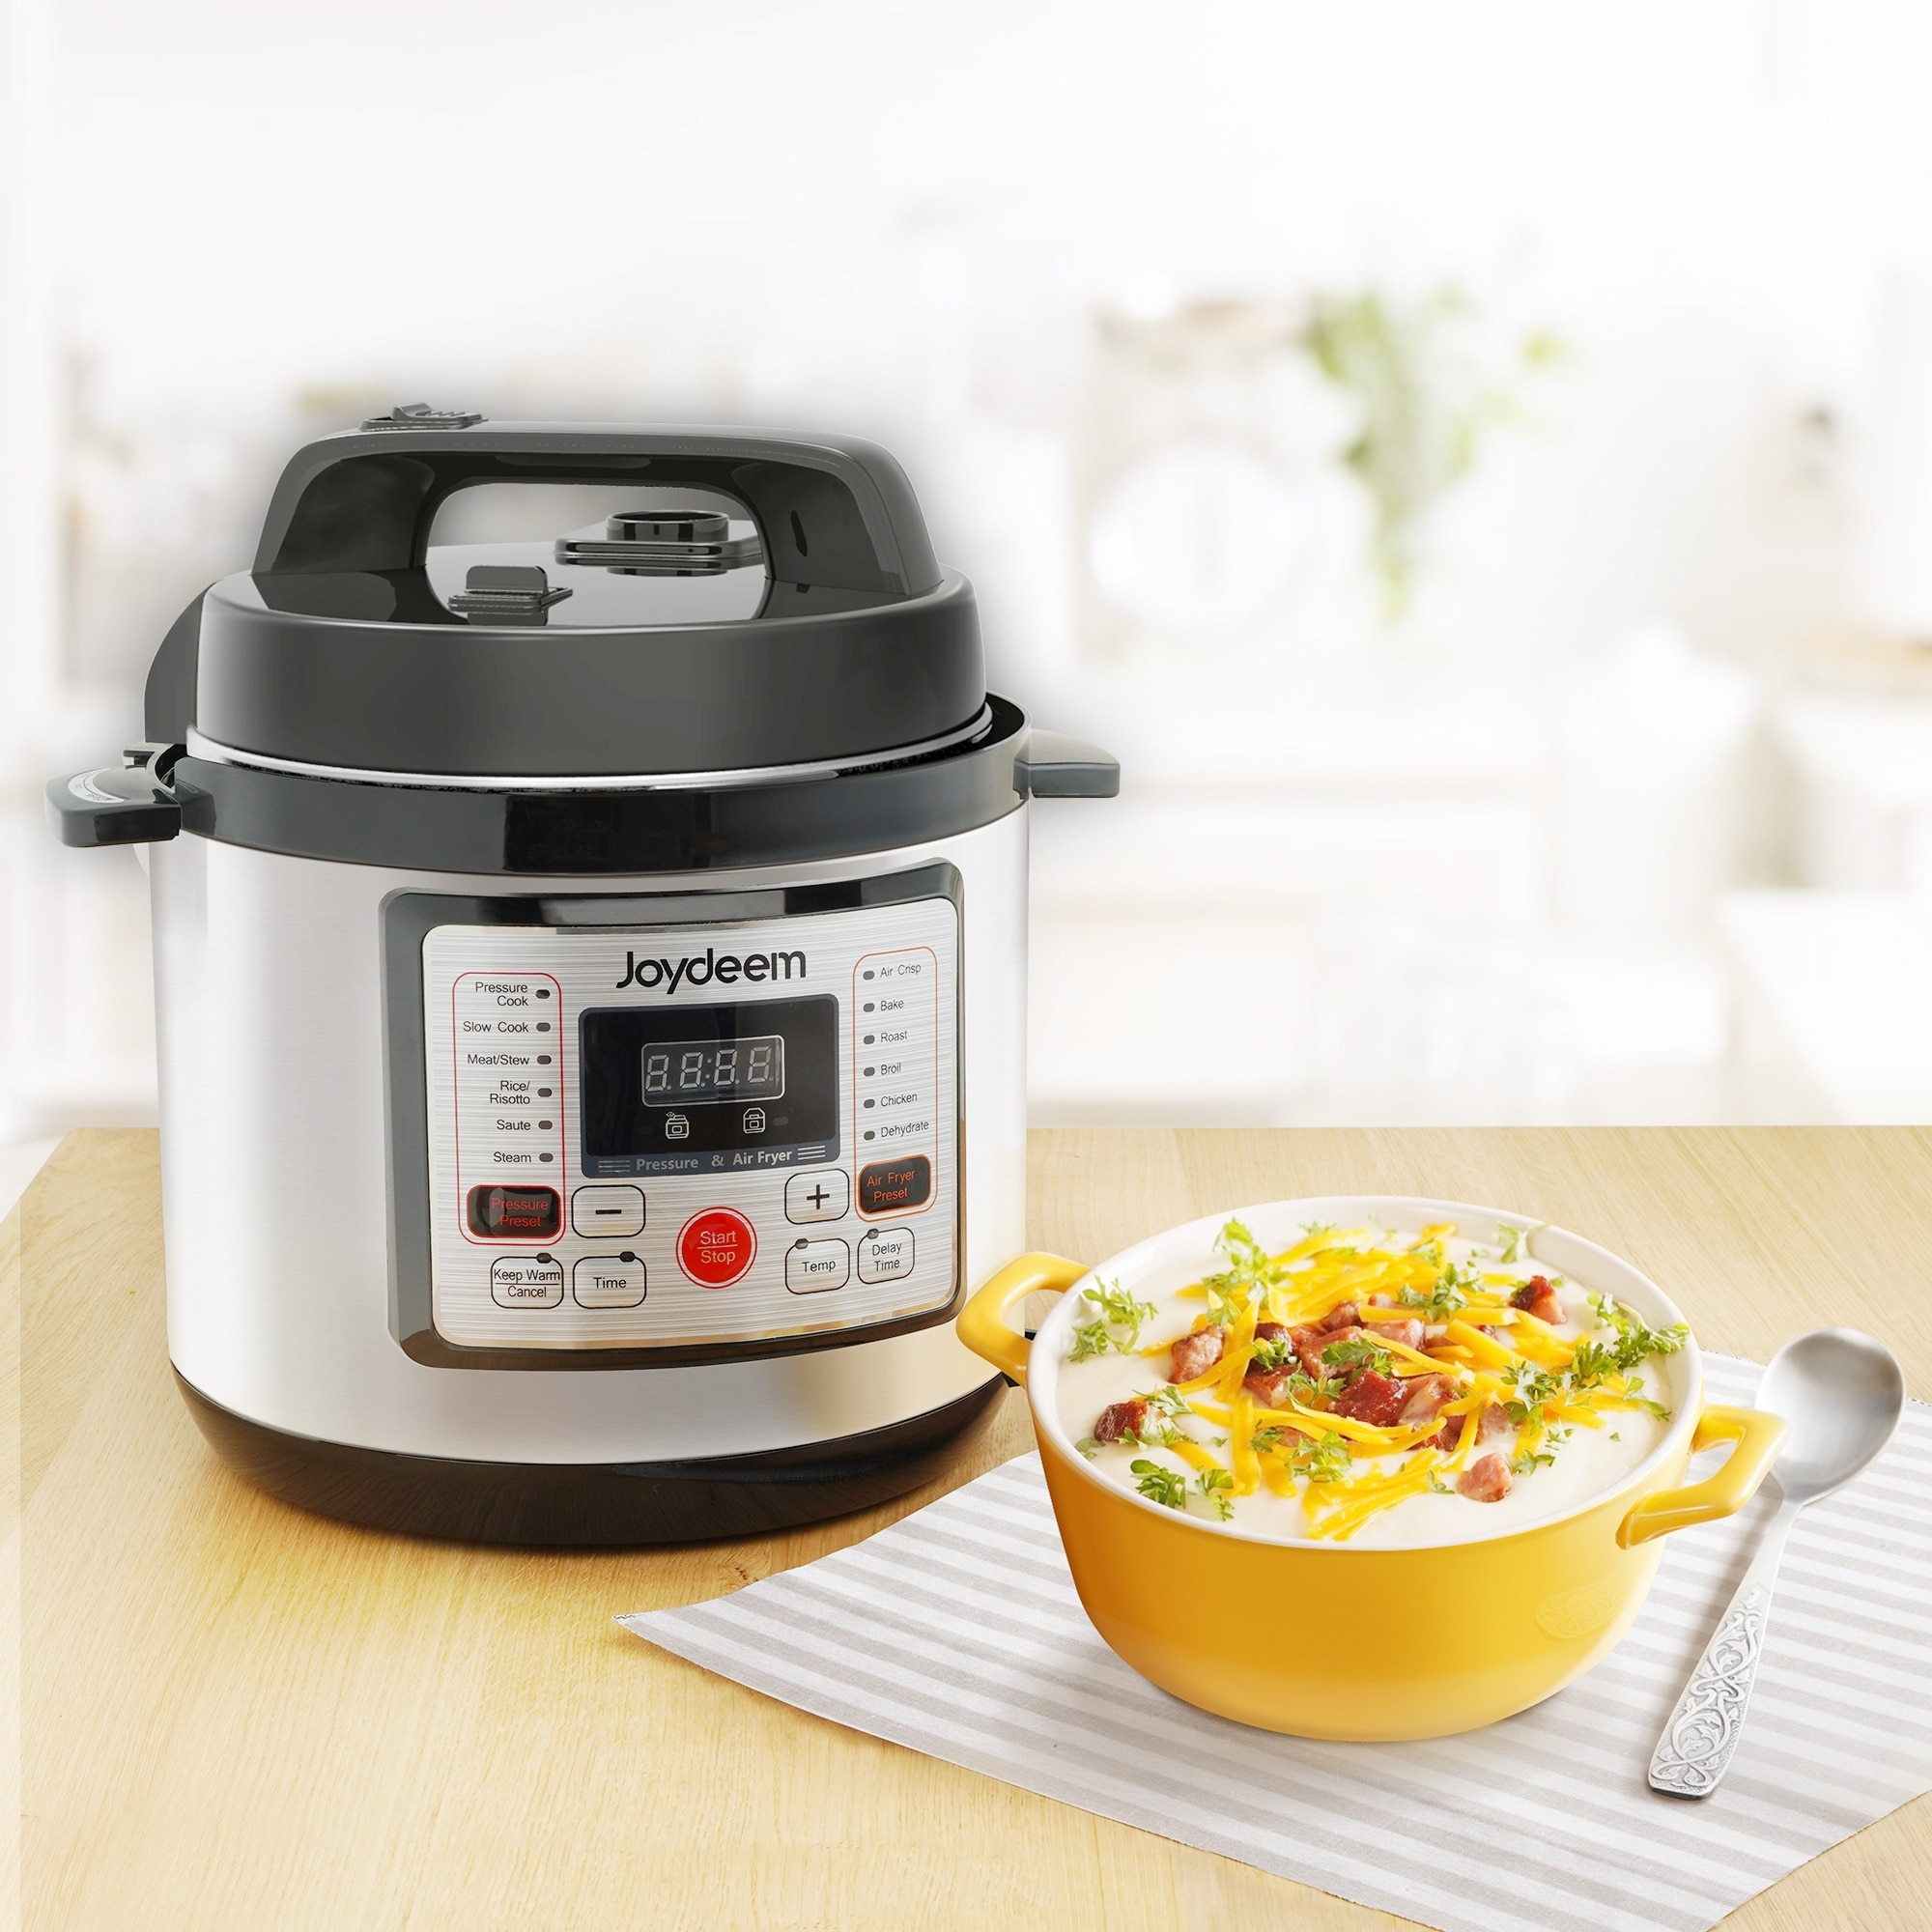 Reviewing Joydeem Rice Cooker & Hot Pot Combo